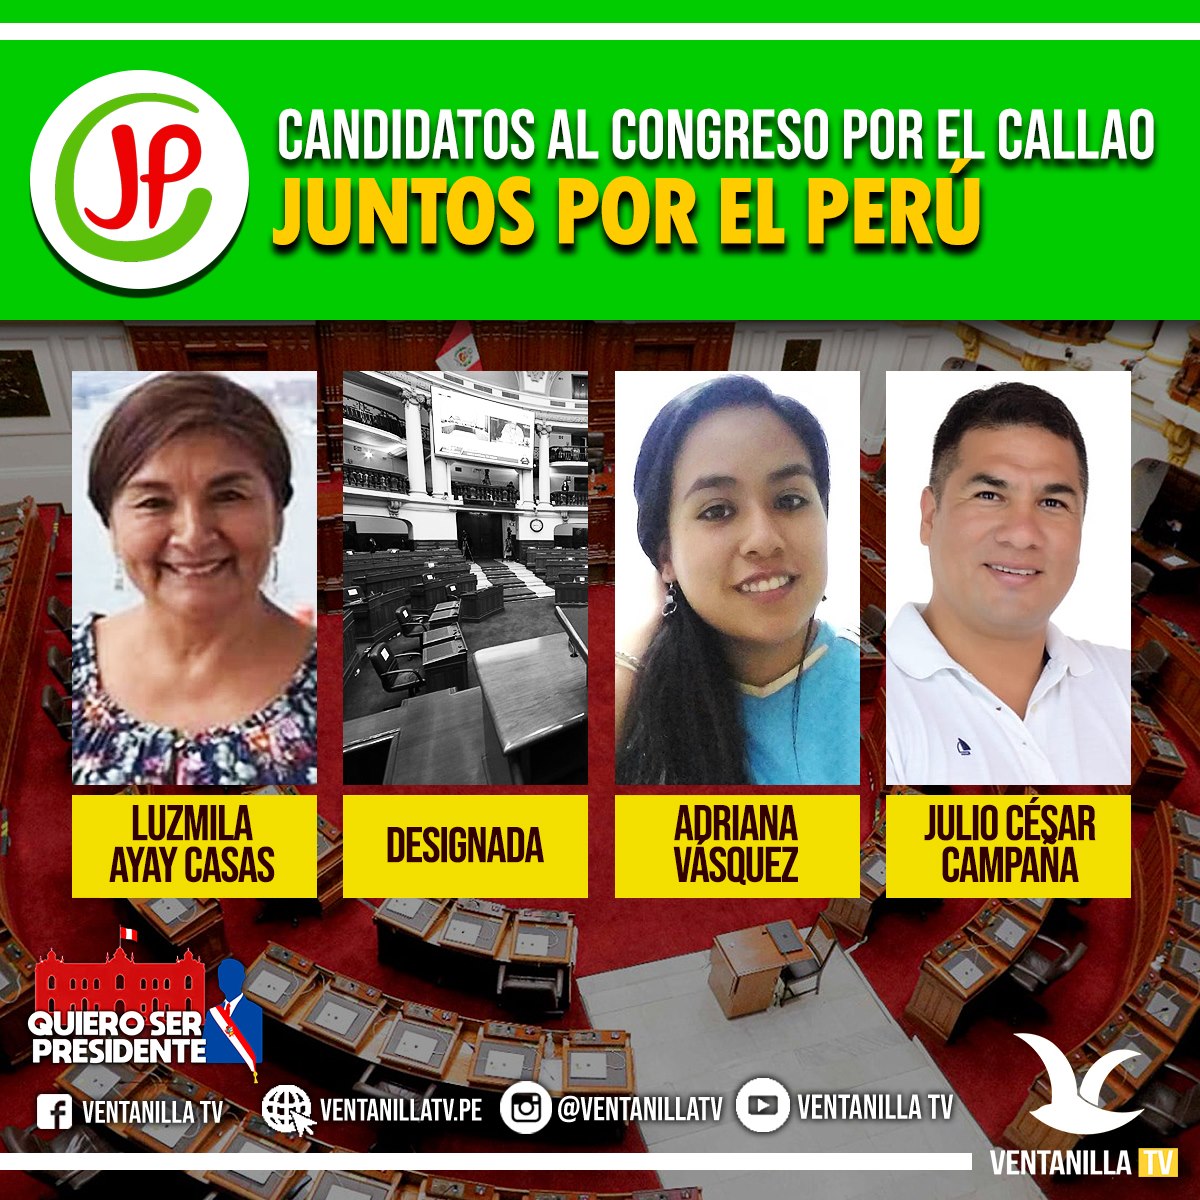 Conozca A Los Candidatos Al Congreso De La RepÚblica 2021 Ventanilla Tv 6492